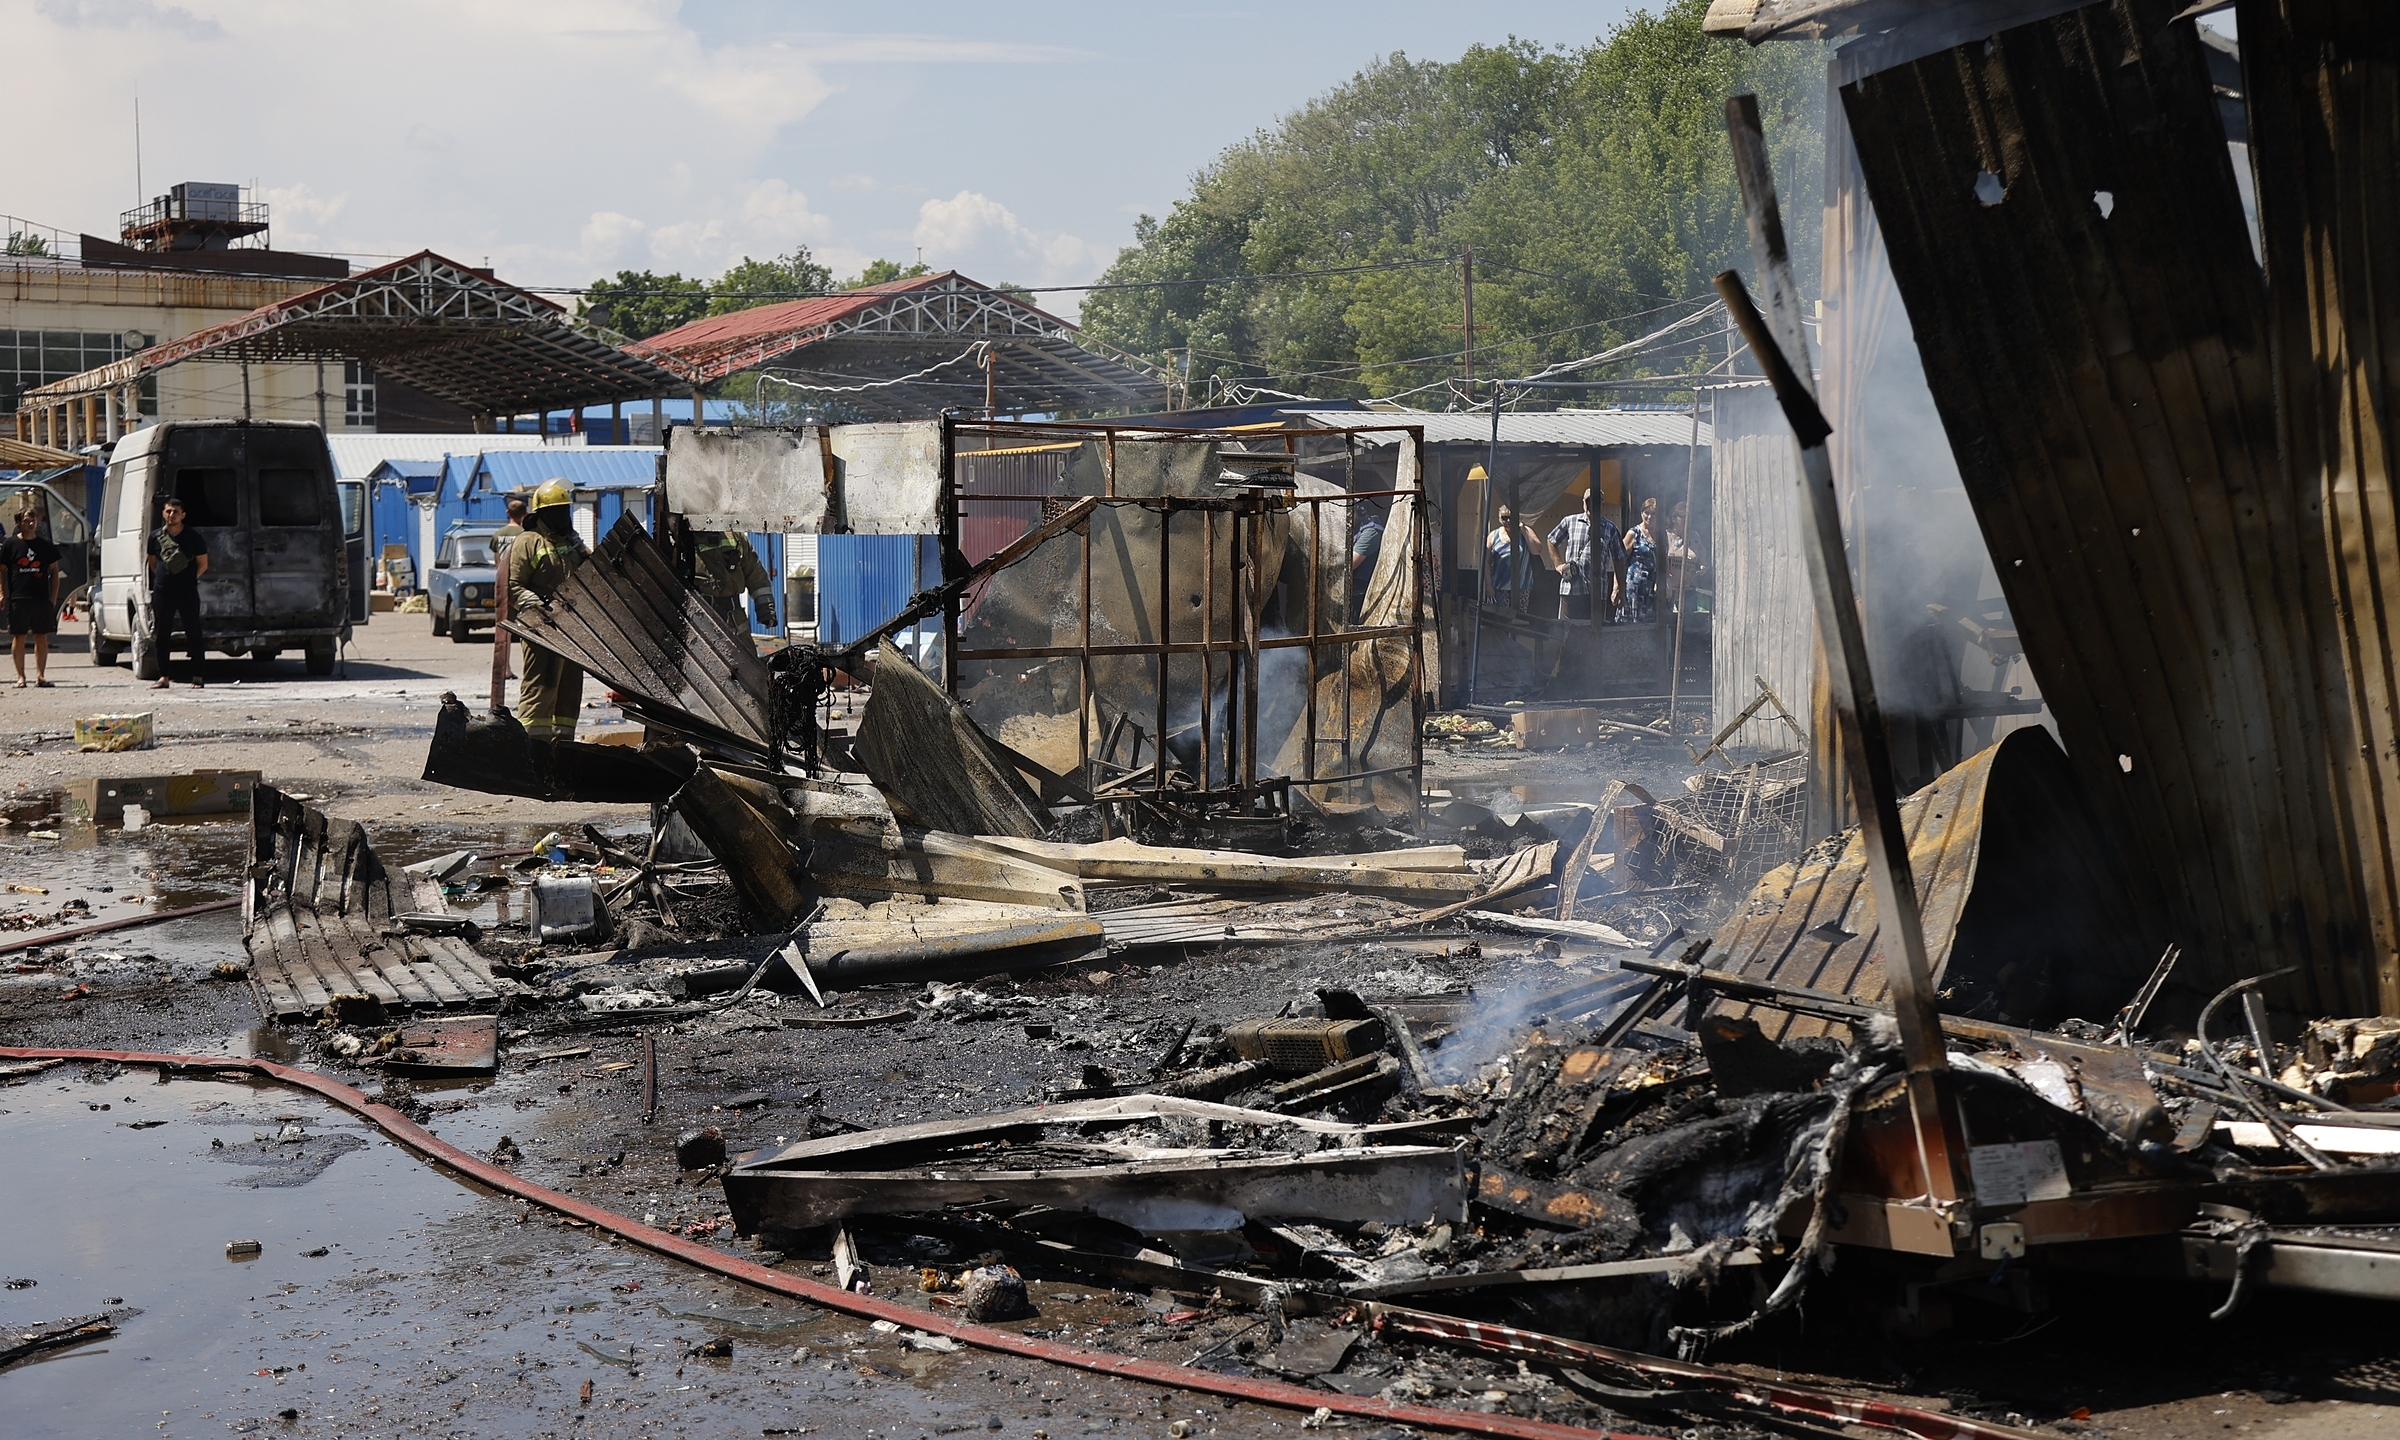 Khu chợ bị cháy trong đợt pháo kích tại Donetsk, miền đông Ukraine, hôm 13/6. Ảnh: AFP.